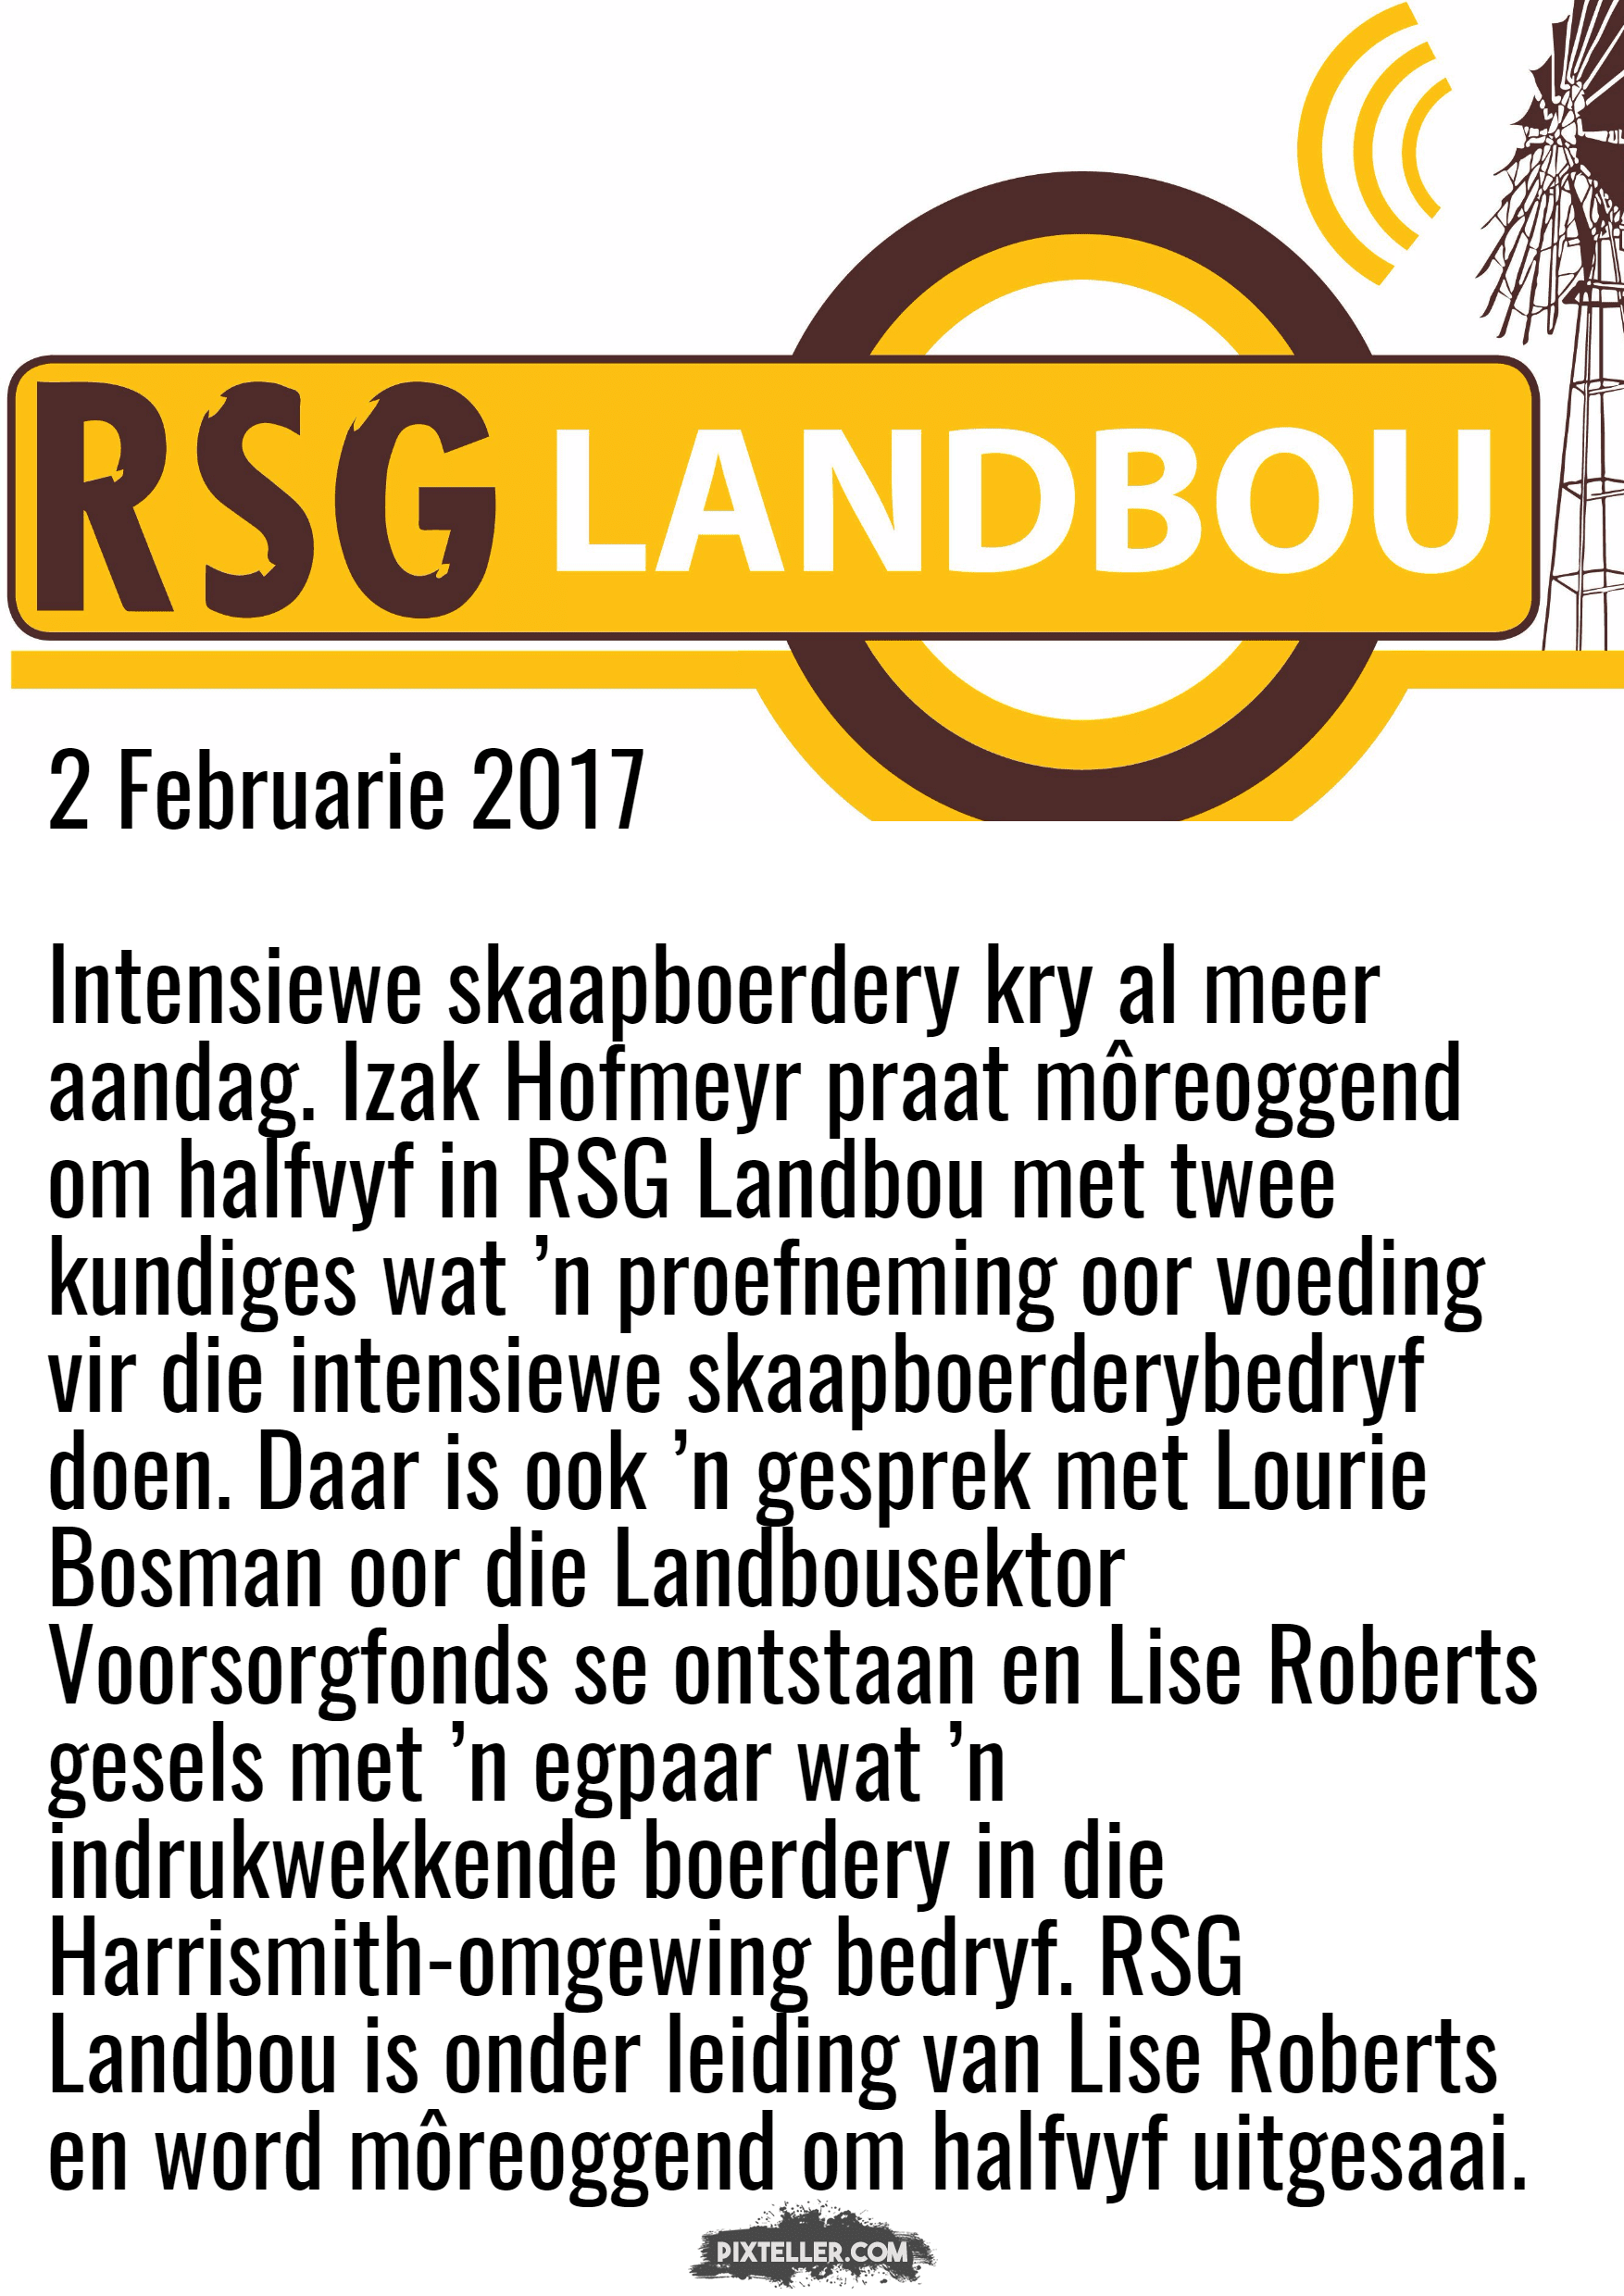 RSG Landbou Design 